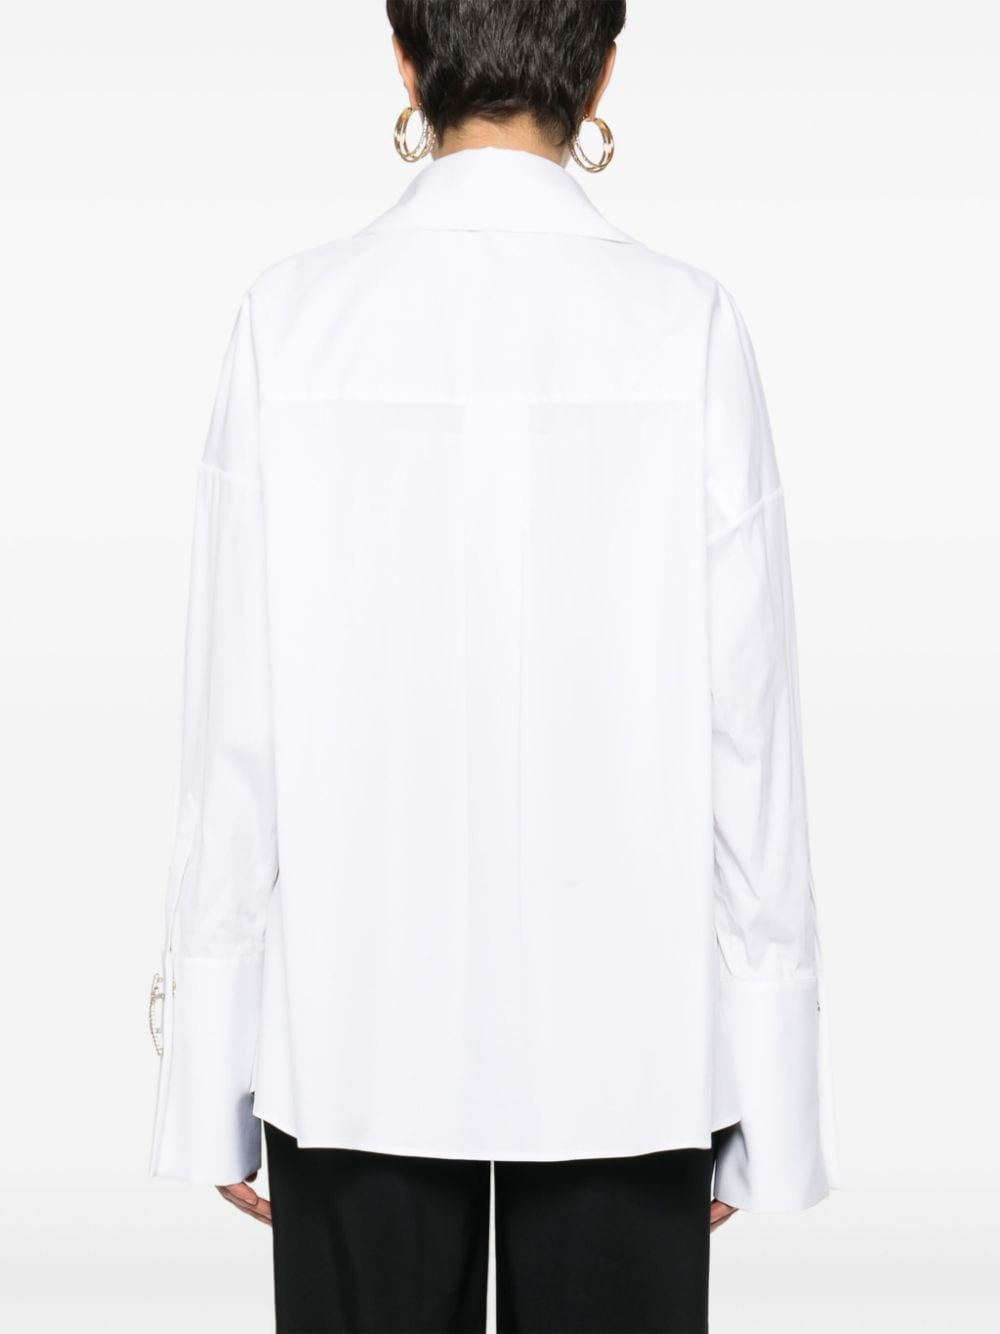 Crystal-embellished poplin blouse<BR/><BR/><BR/>